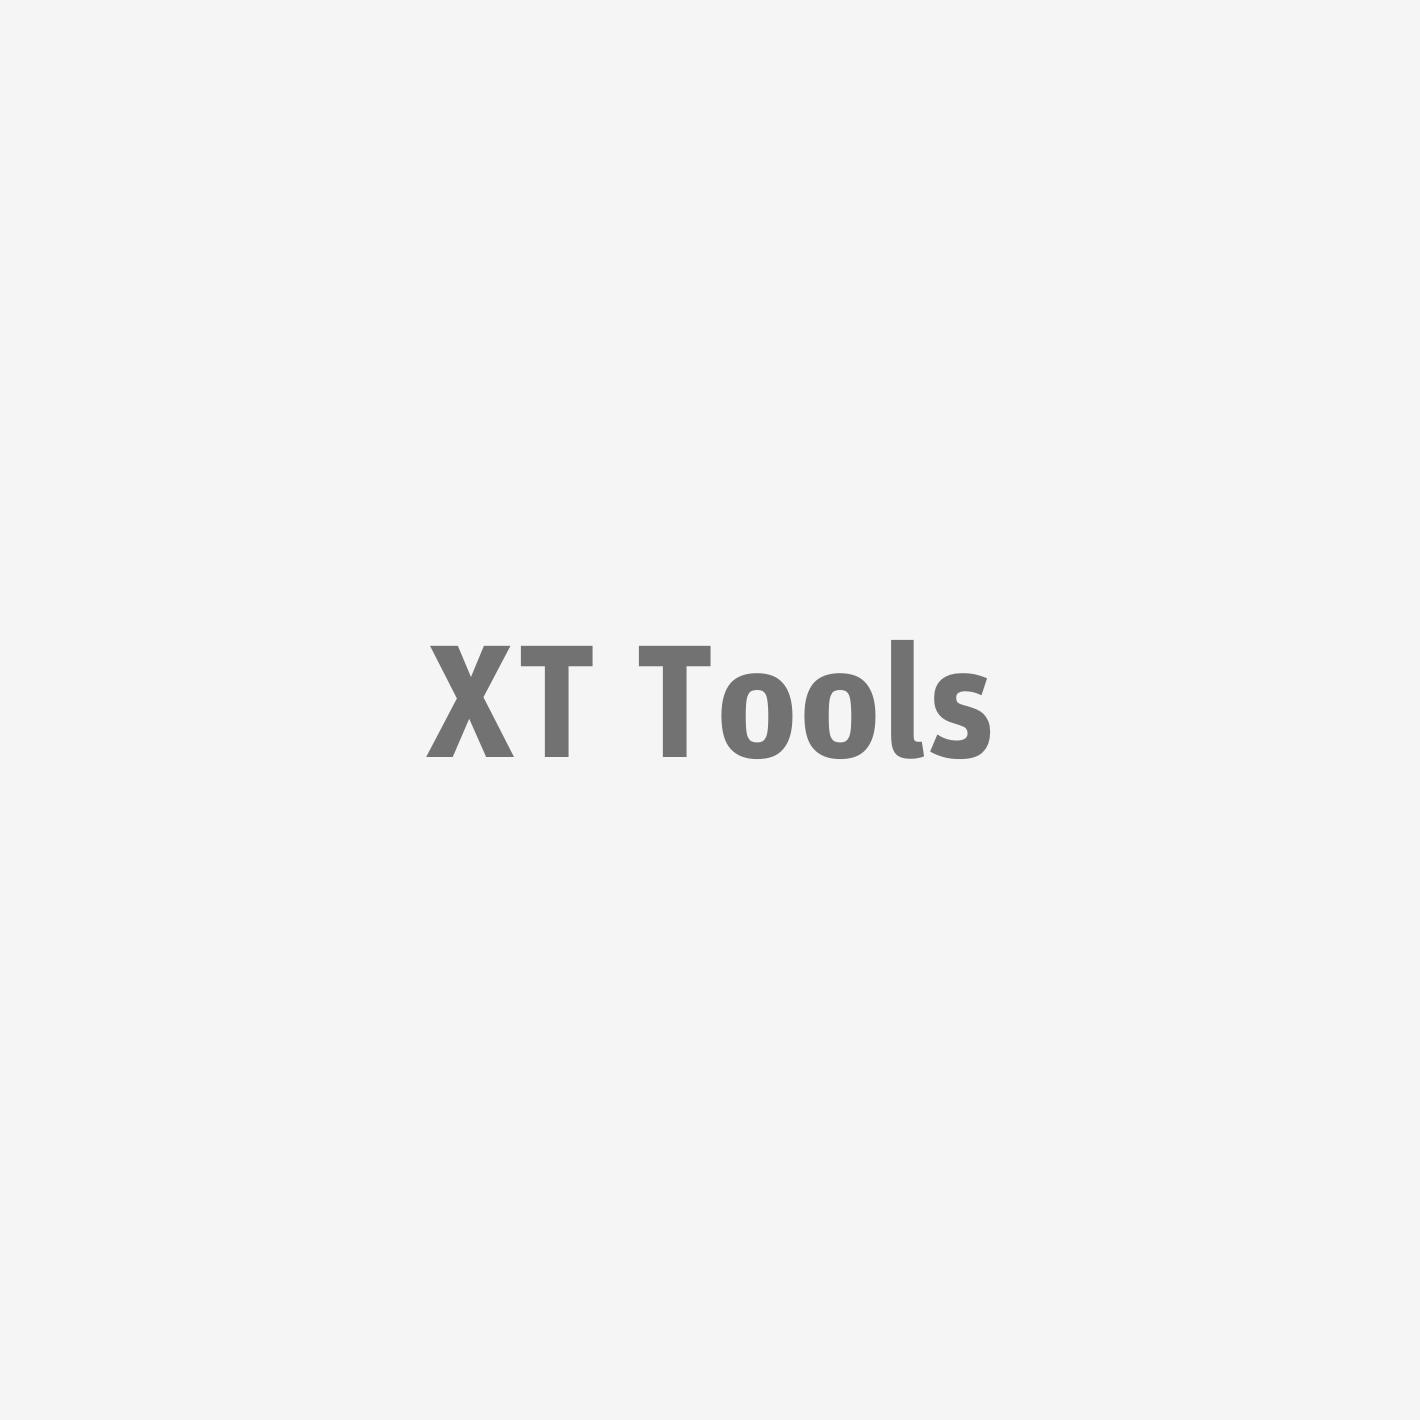 XT Tools